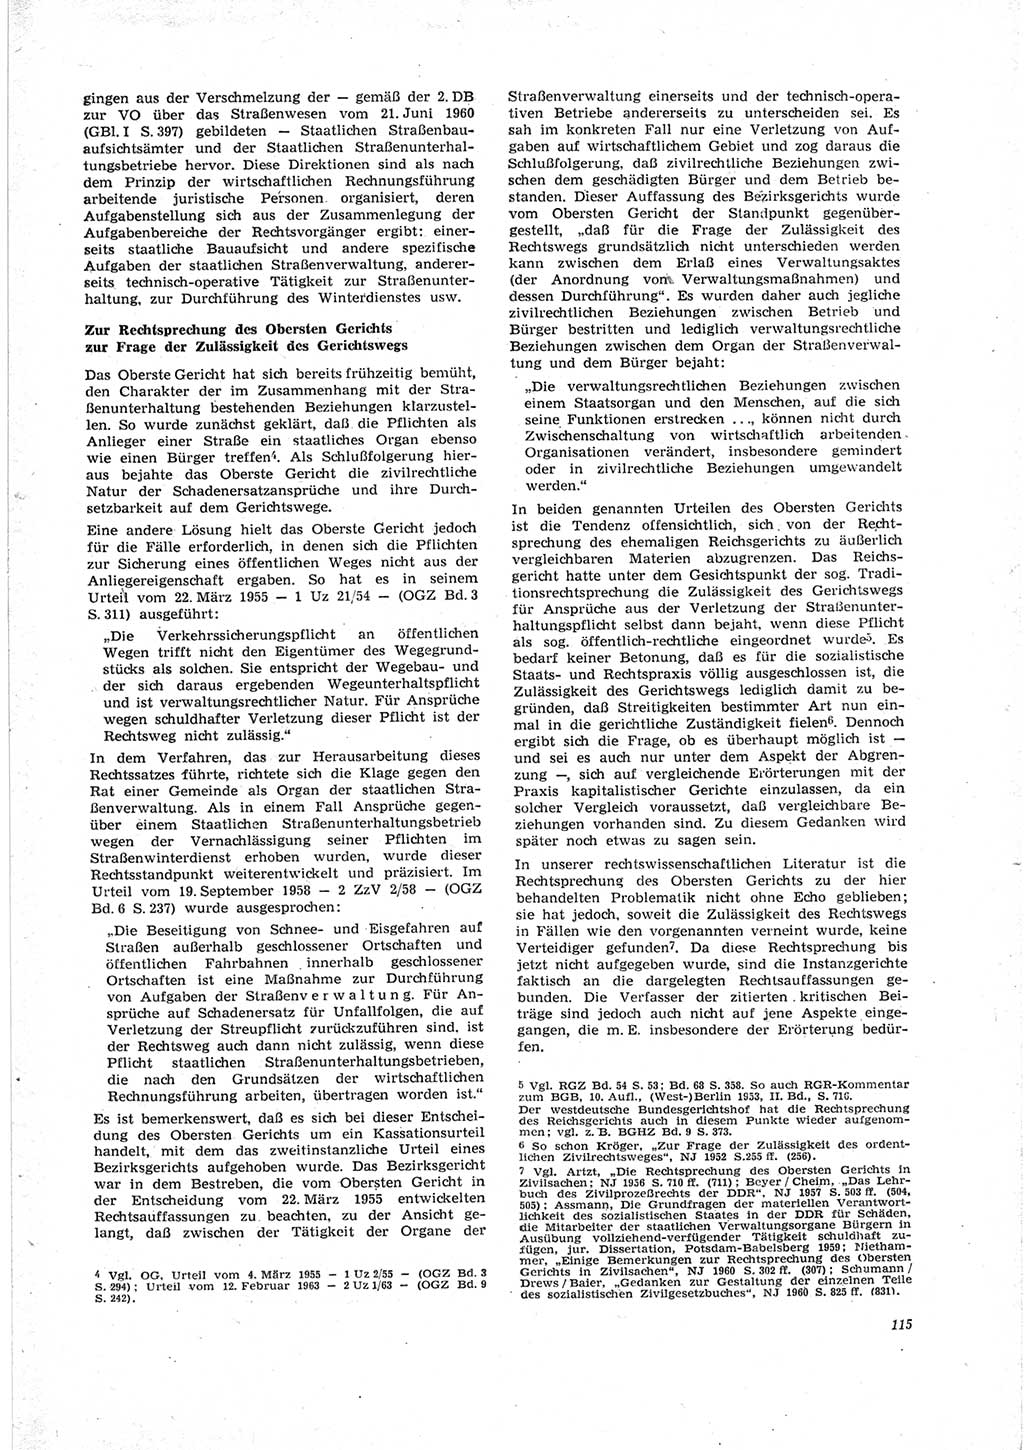 Neue Justiz (NJ), Zeitschrift für Recht und Rechtswissenschaft [Deutsche Demokratische Republik (DDR)], 23. Jahrgang 1969, Seite 115 (NJ DDR 1969, S. 115)